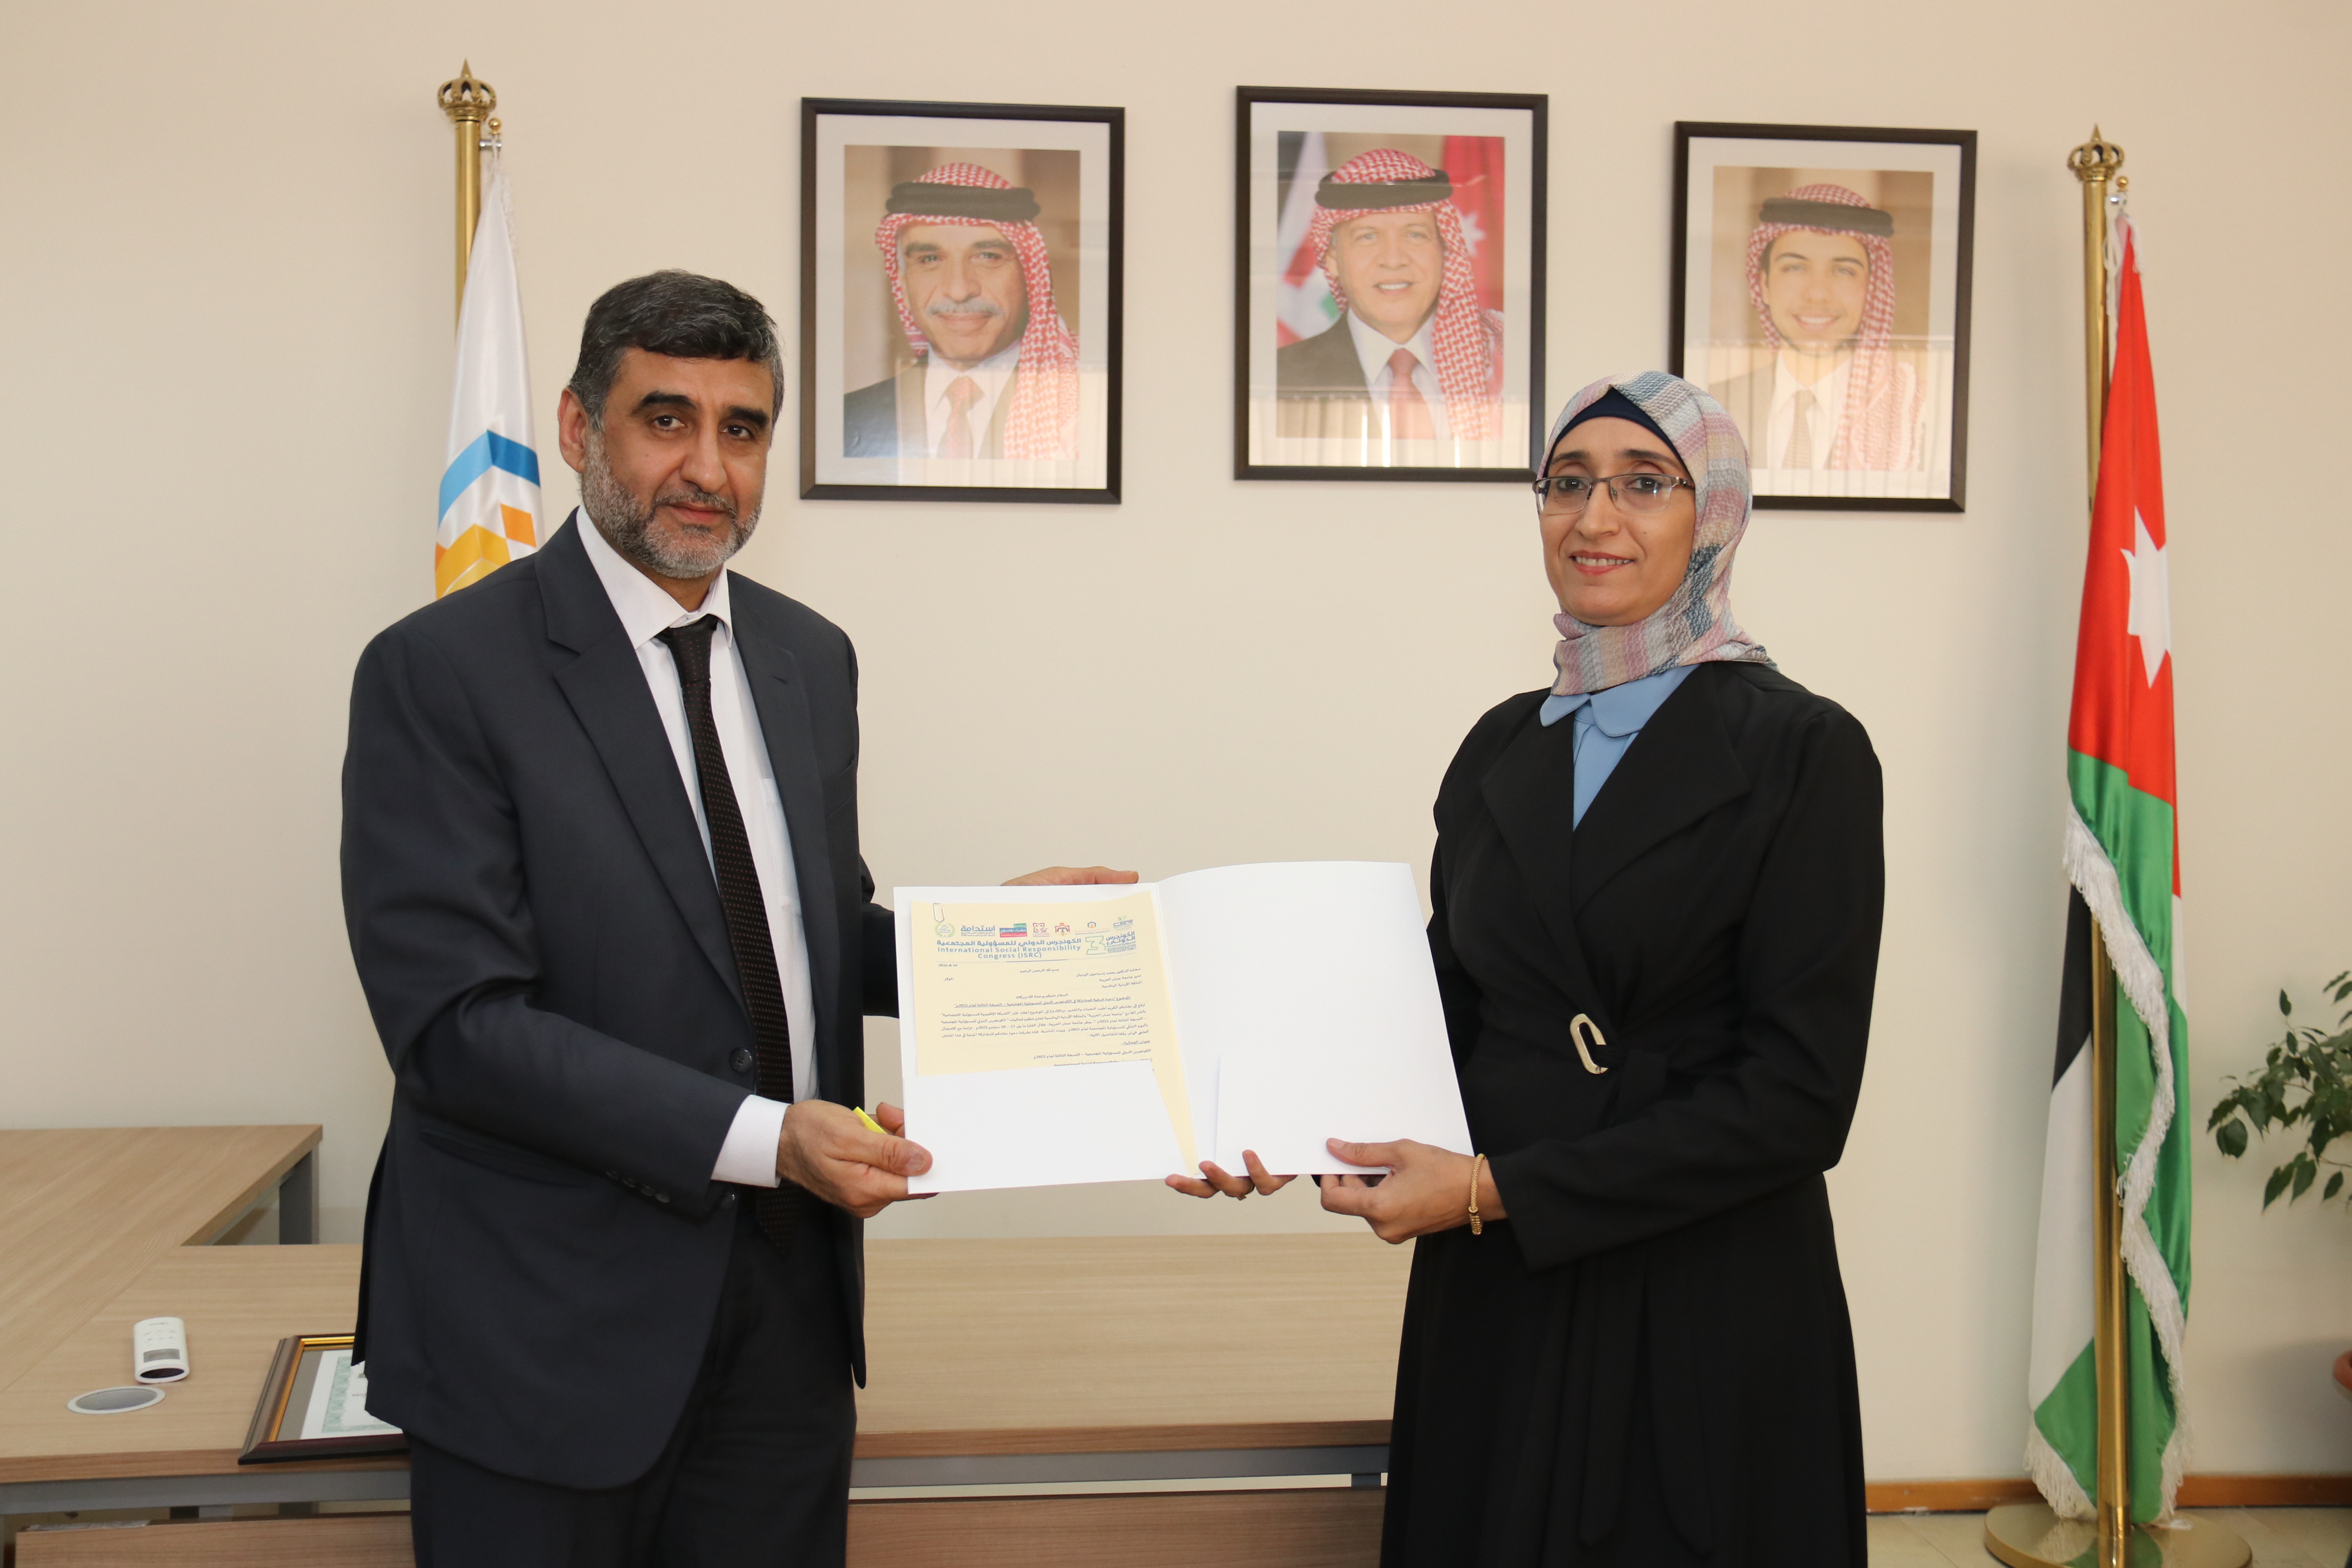 "عمان العربية" بصدد استضافة الكونجرس الدولي للمسؤولية المجتمعية2